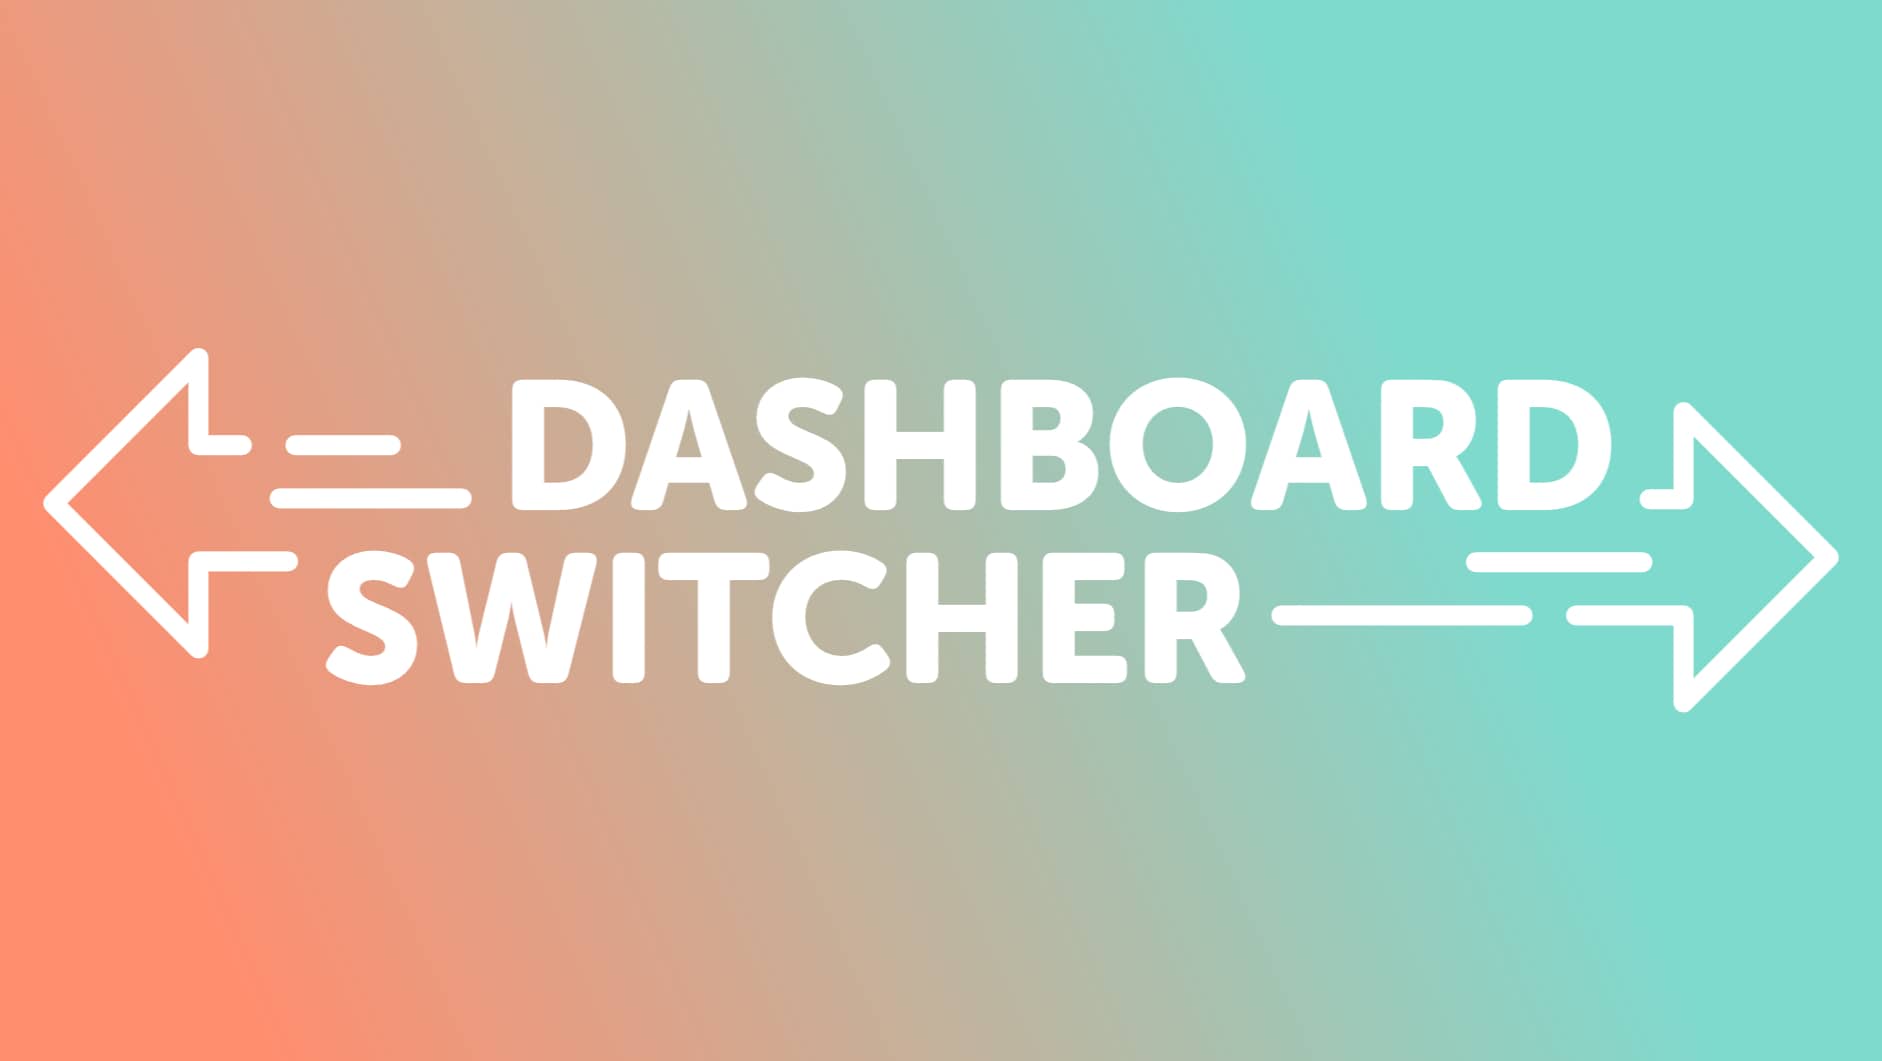 دانلود افزونه وردپرس Dashboard Switcher - تغییر صفحه خوش آمد گویی وردپرس